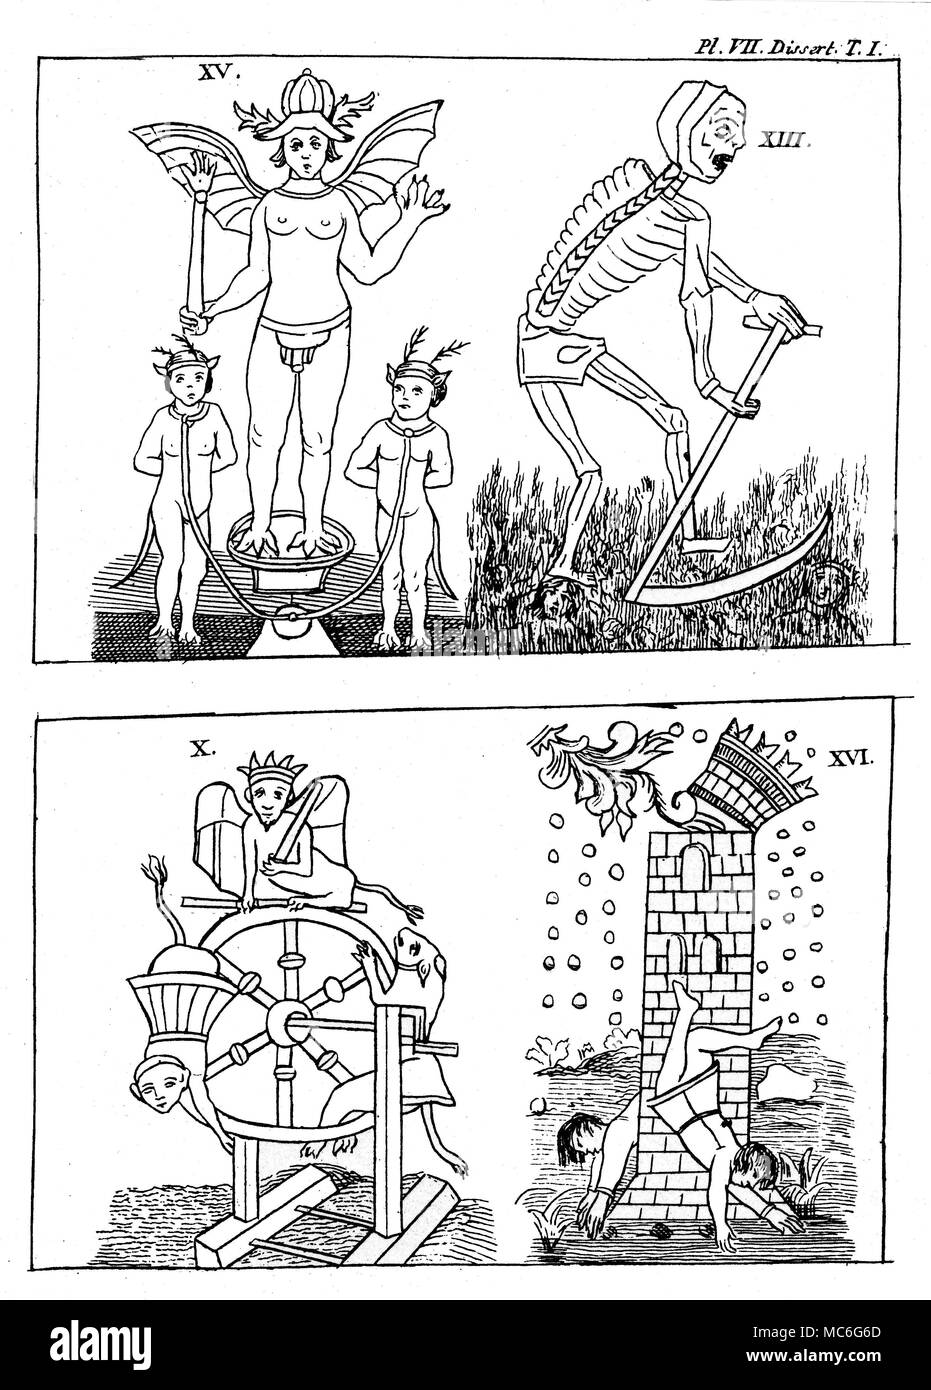 Cartes de tarot - GEBELIN DESIGN - DEVIL - décès - tour de roue - [haut] Le Diable, 15 Carte de l'ensemble représenté par l'anglais Mason, COURT de GEBELIN, en 1773, basé sur la plate-formes de Marseille qu'il avait vu. Gebelin identifié la carte avec typhon, l'équivalent grec du dieu égyptien de l'obscurité, ensemble. Voir COURT de GEBELIN, Le Monde Primitif, vol. III [1773] et VIII [1781]. [Haut] droit la mort, carte numéro 13 de la conception de GEBELIN. [En bas à gauche] La Roue de la fortune, de la carte 10 Gebelin design. [En bas à droite] La maison de Dieu, 16, carte de la conception Gebelin, qu'il a particulièrement bien je Banque D'Images